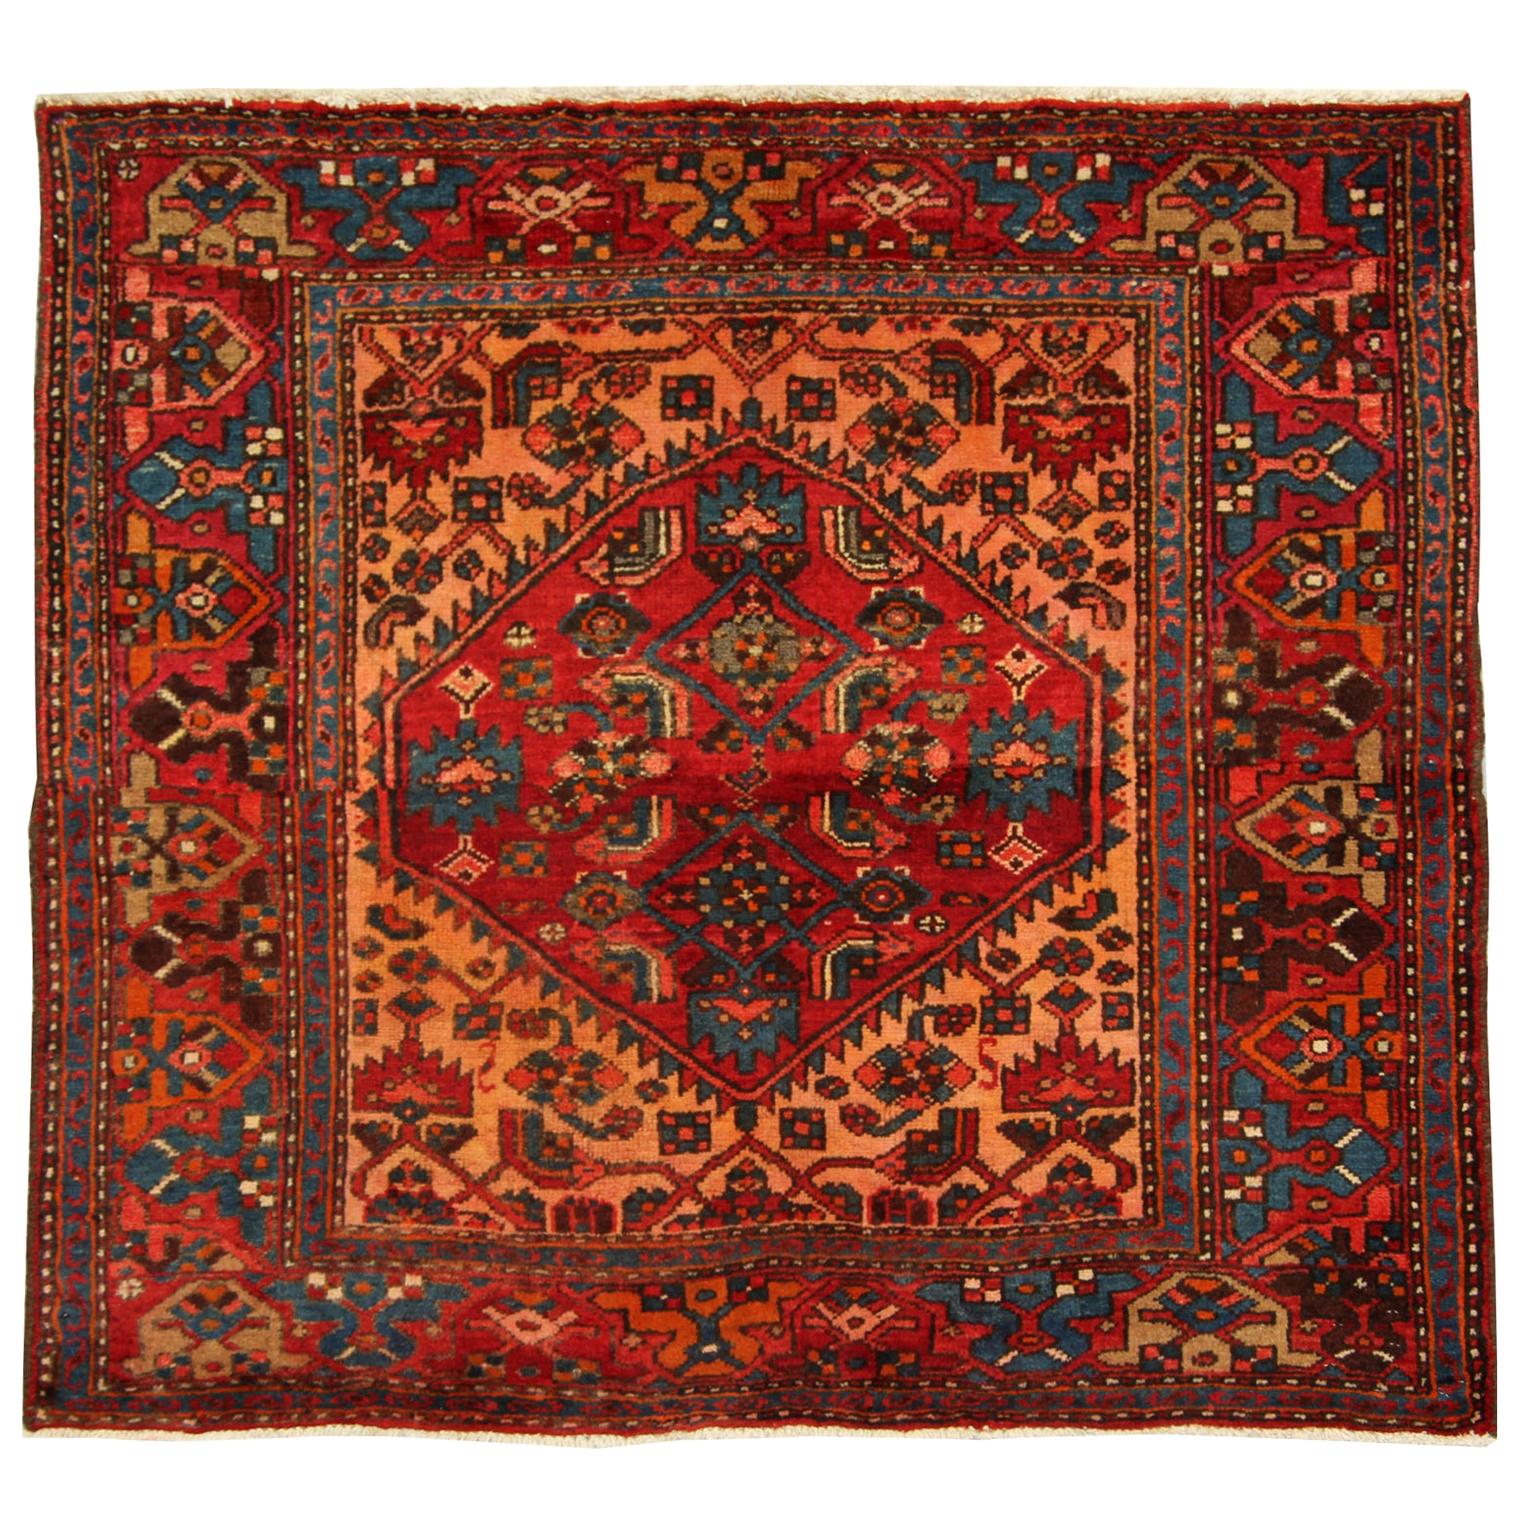 Red Wool Rug Handmade Carpet Rustic Gold Oriental Area Rug